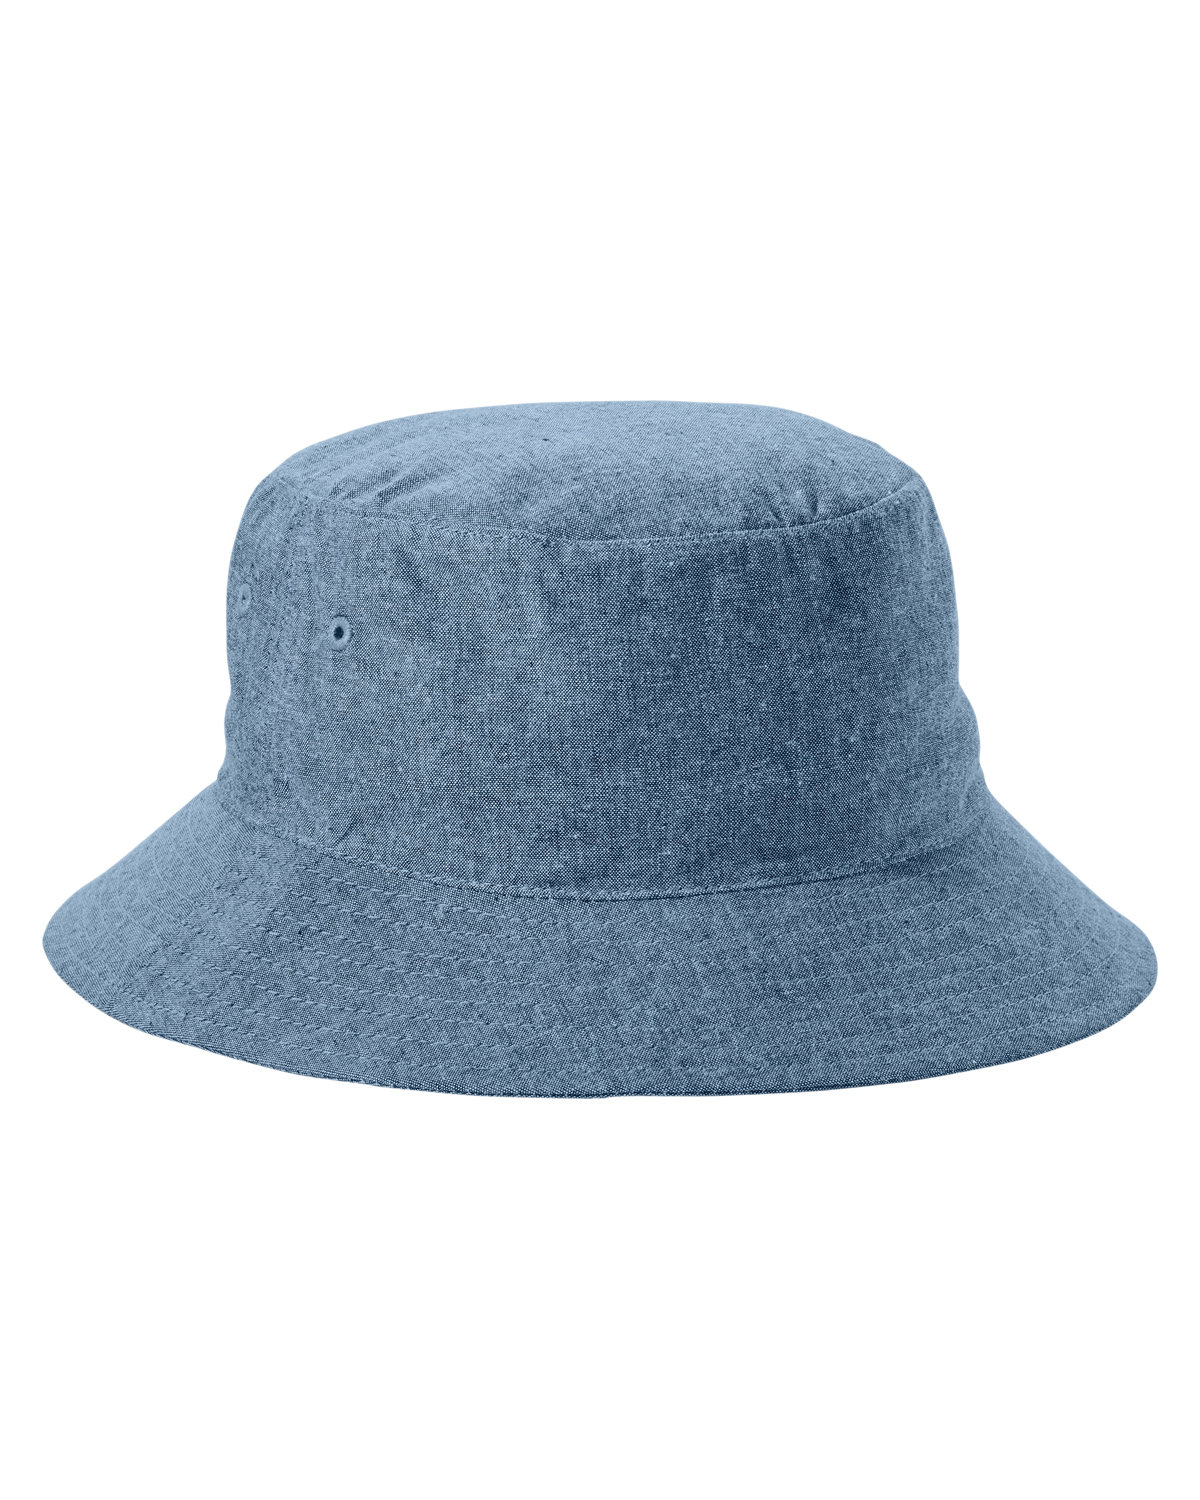 Big Accessories Crusher Bucket Hat | alphabroder